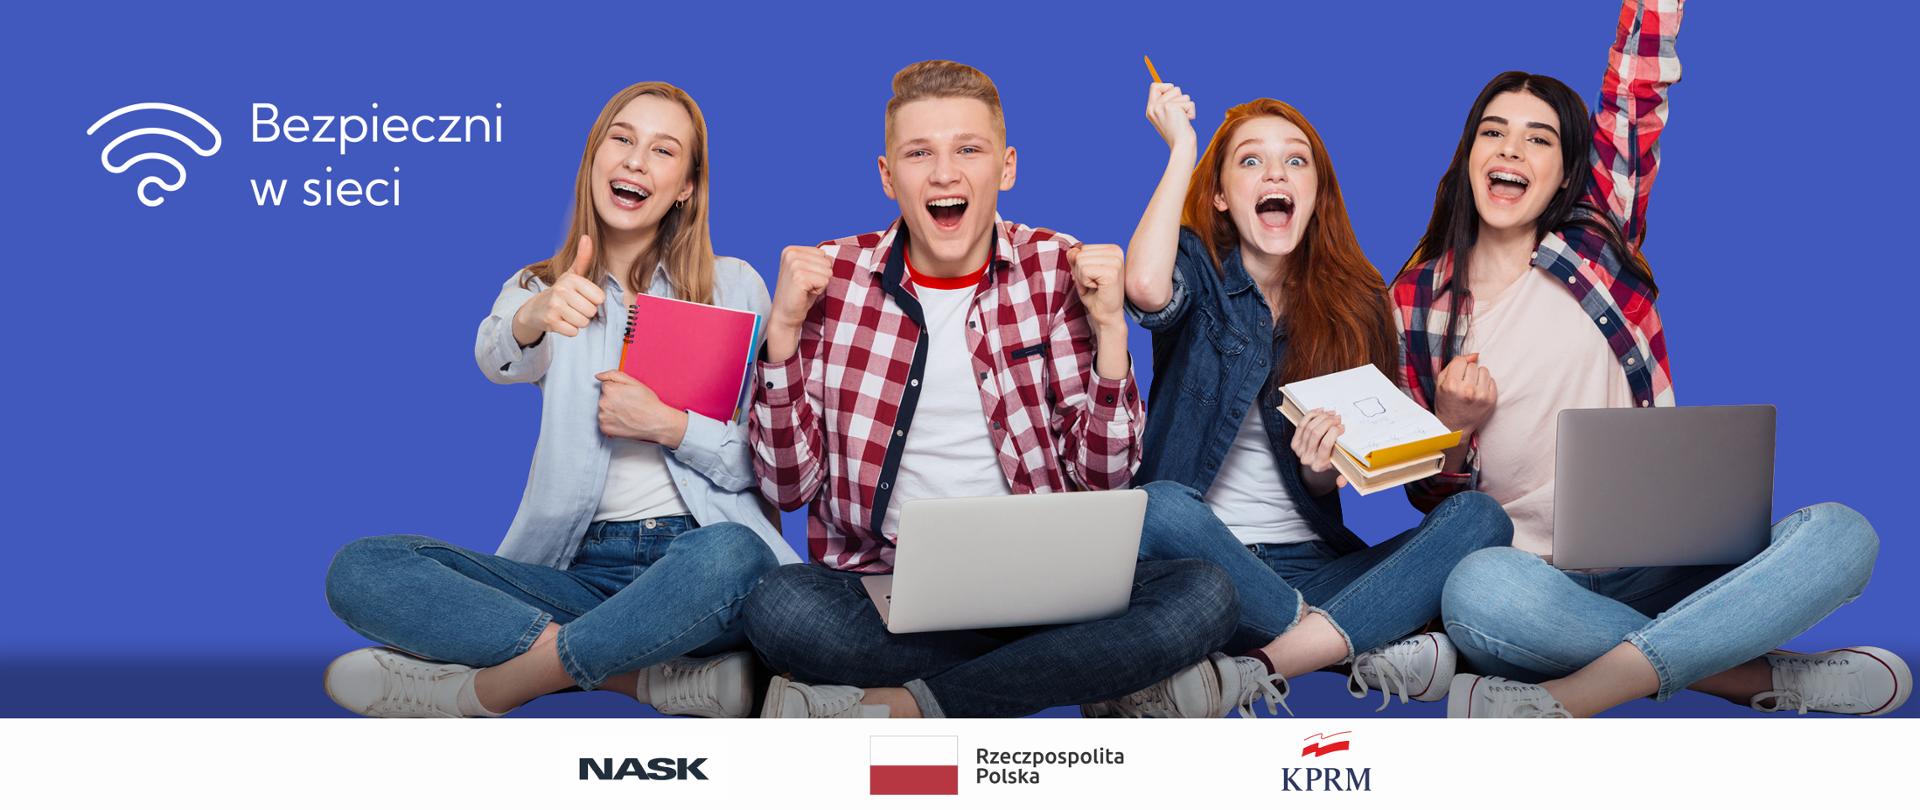 zdjęcie młodzieży - trzech siedzących dziewczyn i jednego chłopca z laptopem i zeszytami na niebieskim tle